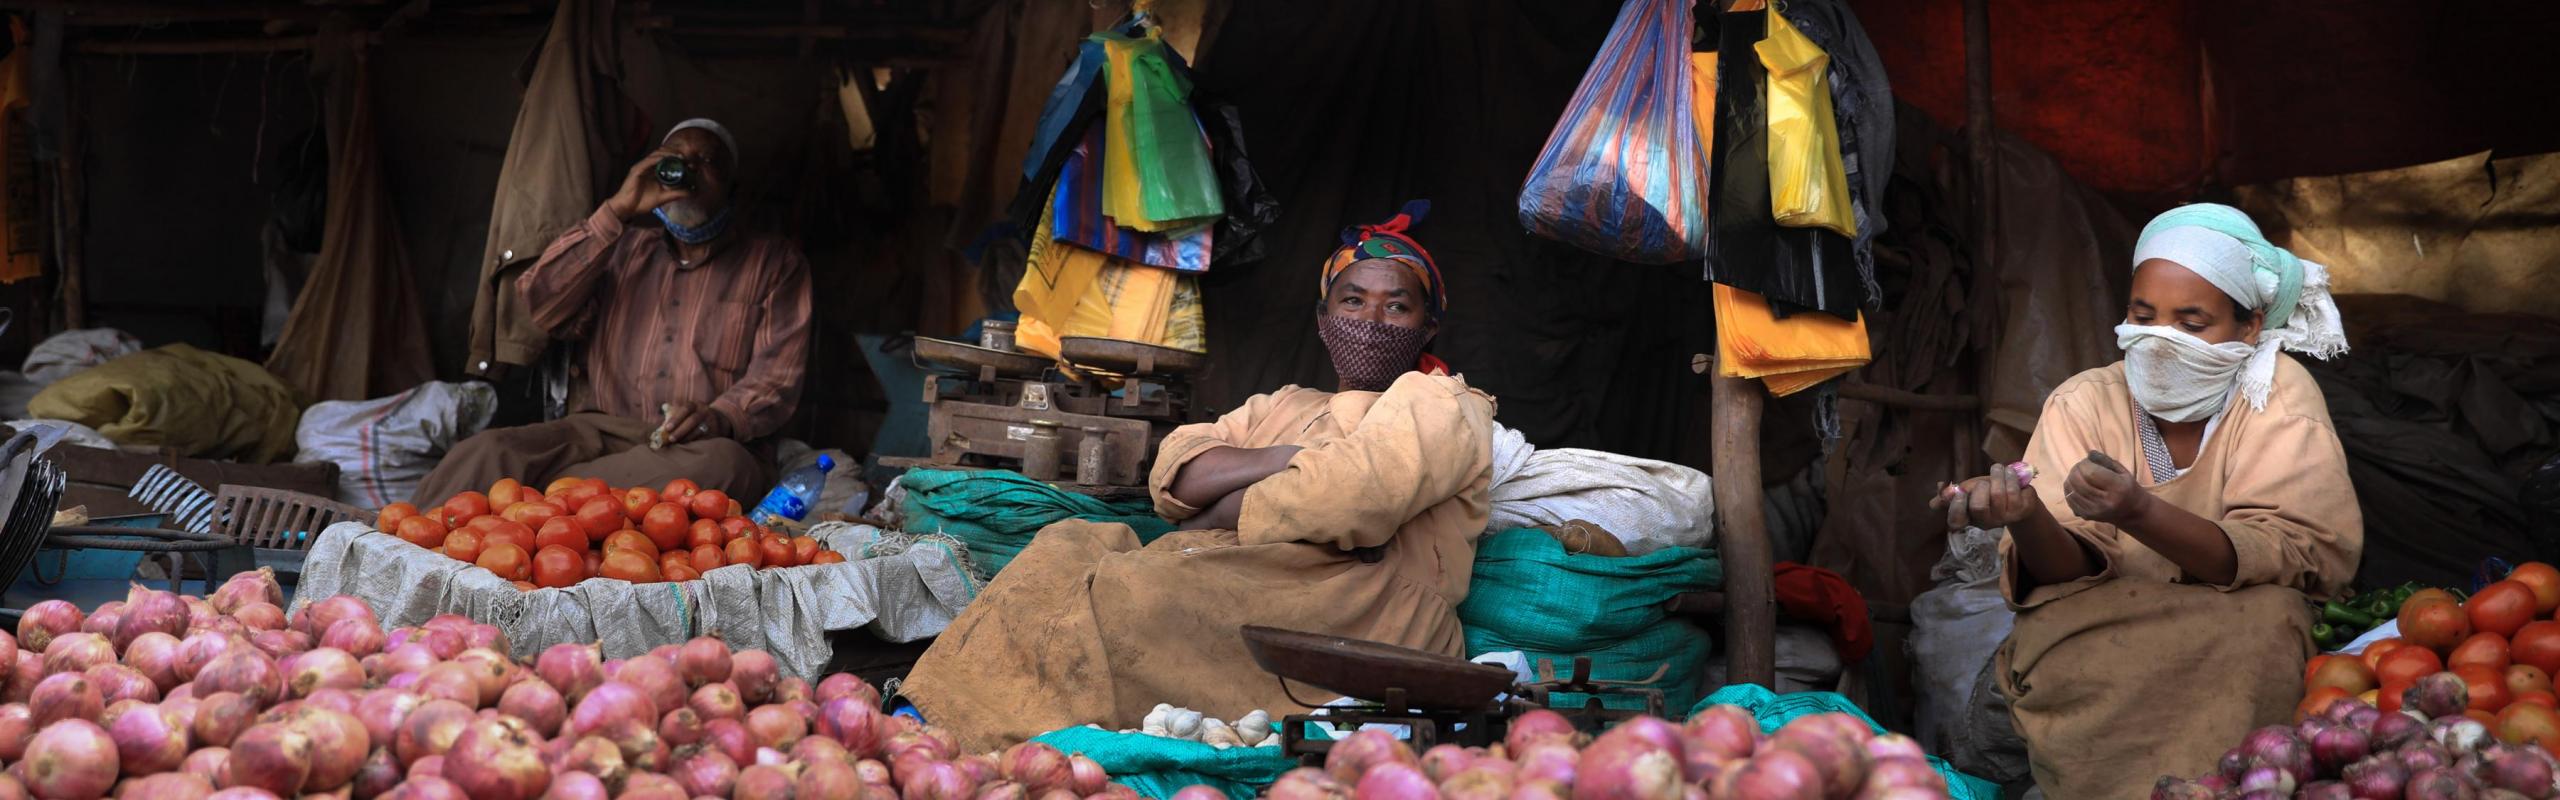  Les femmes portant des masques au marché alimentaire en Ethiopie